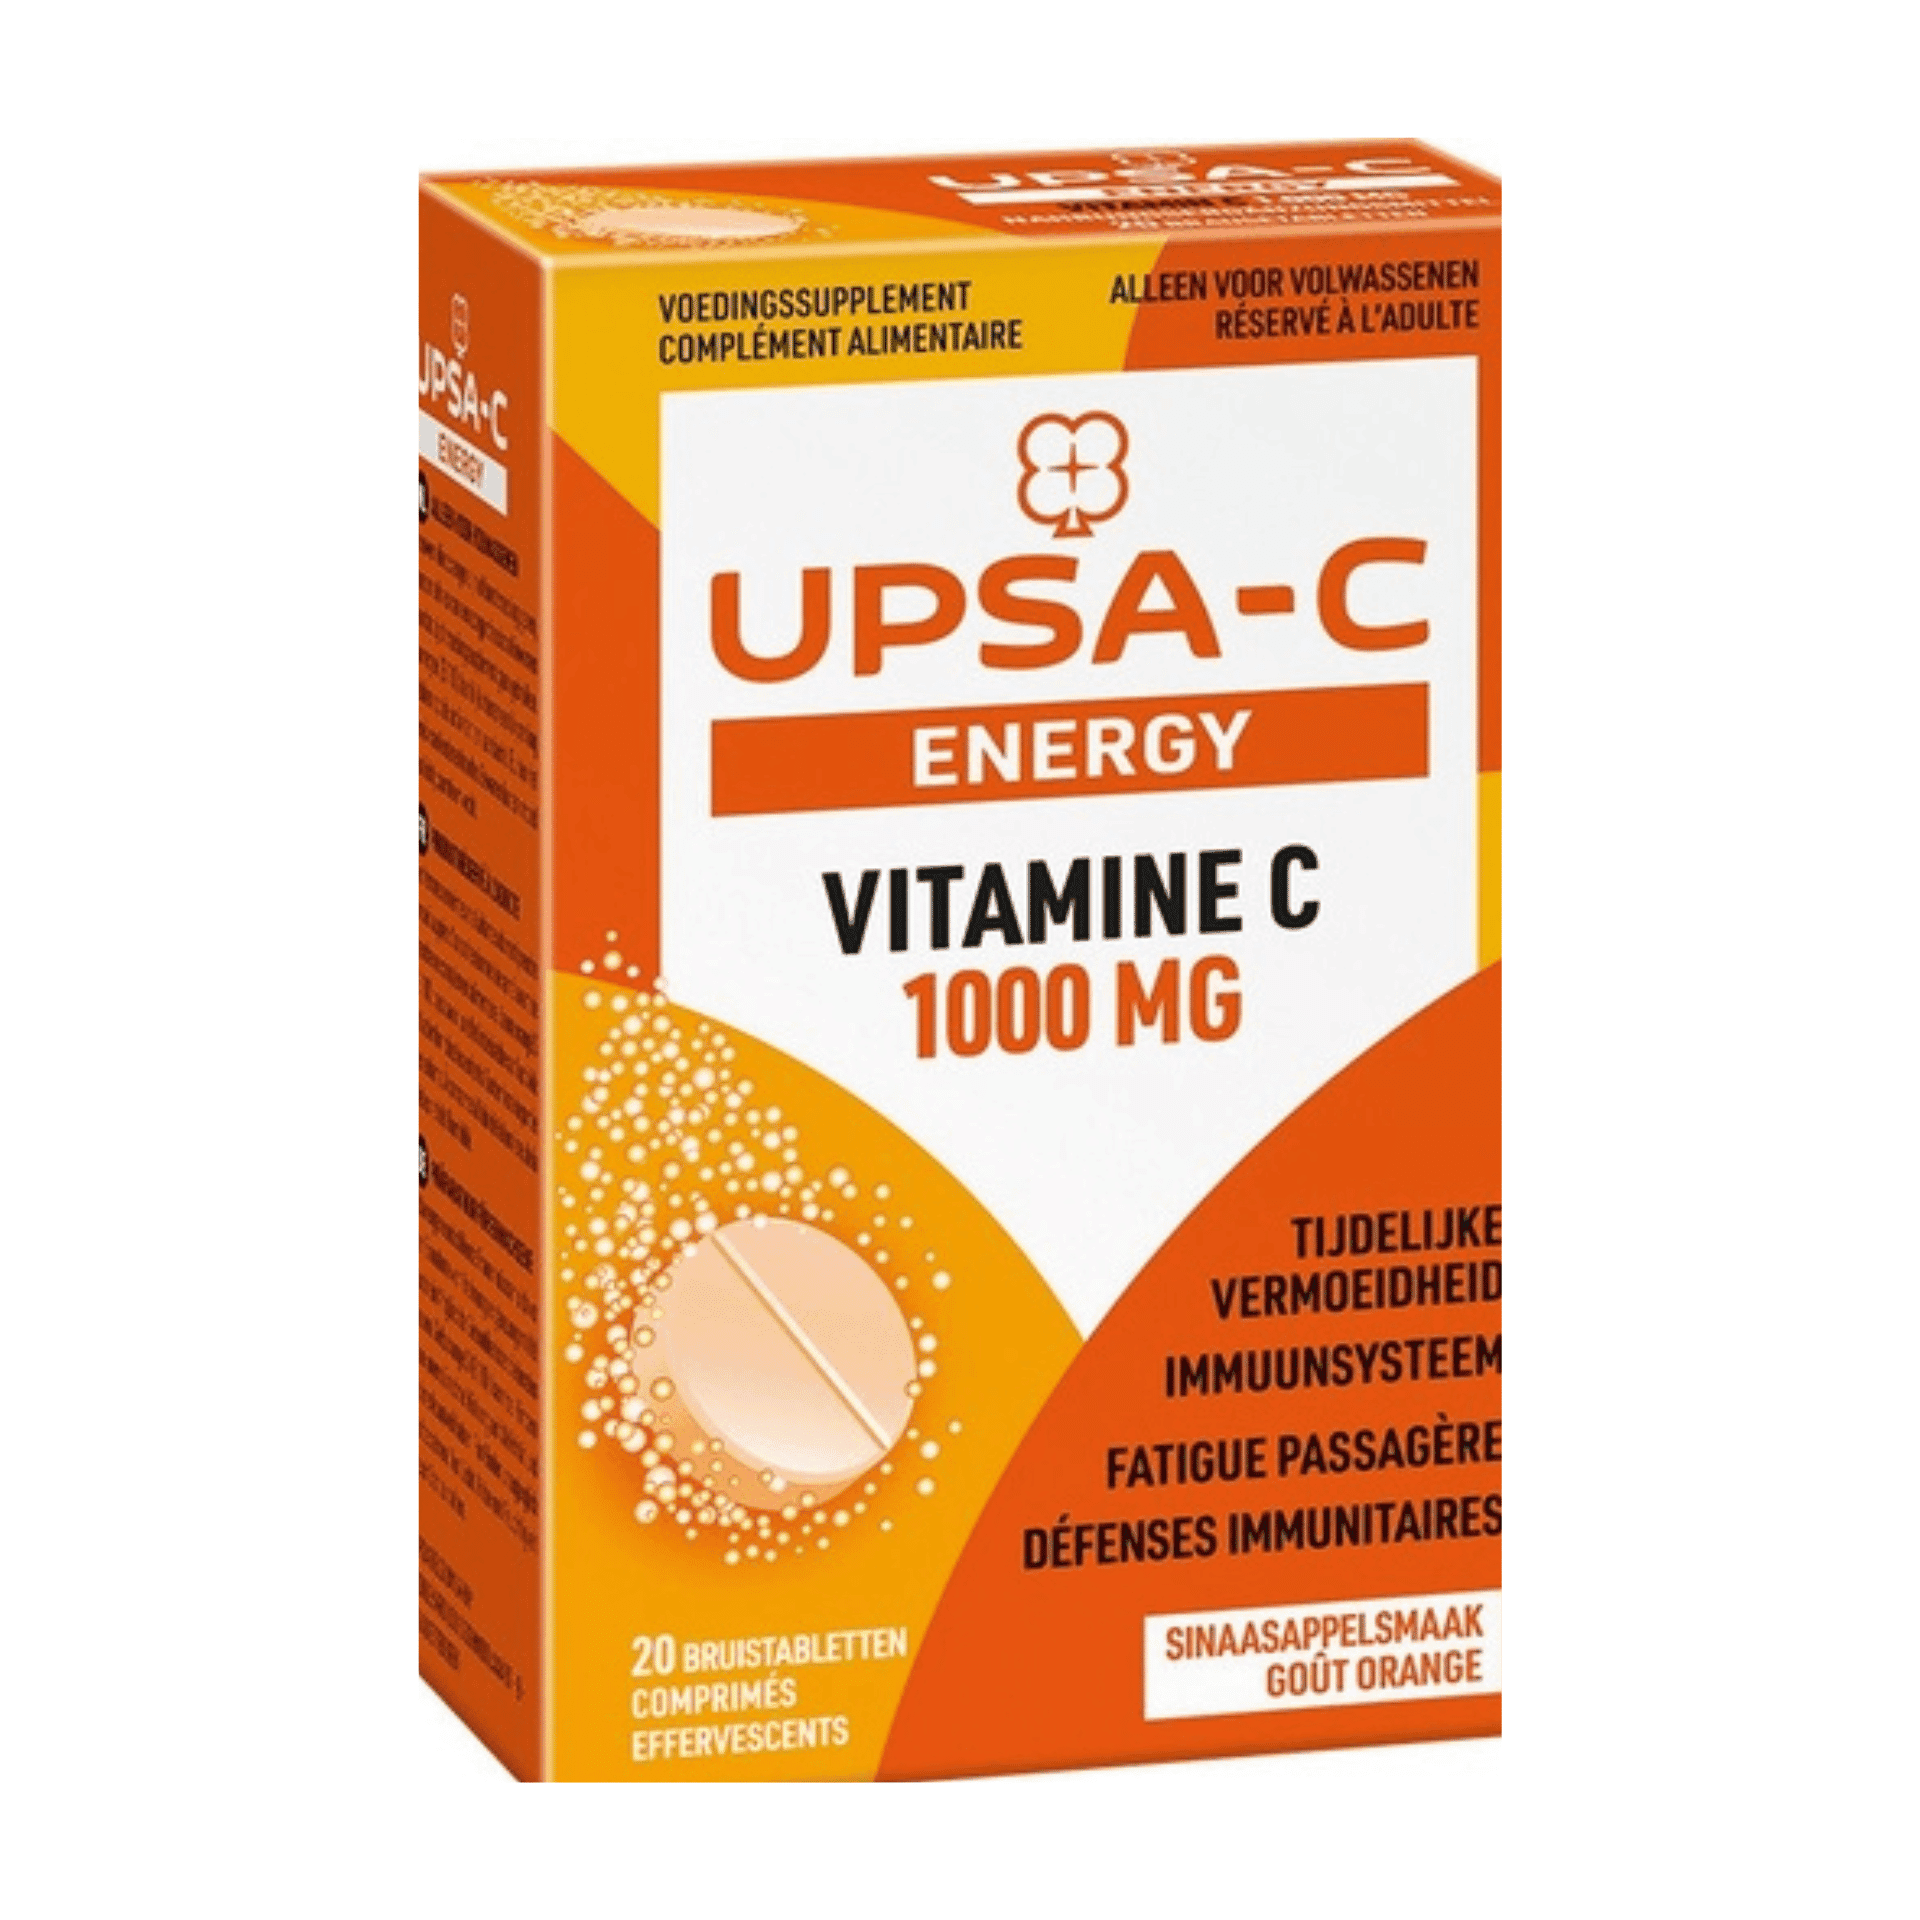 UPSA-C Energy 1000 mg